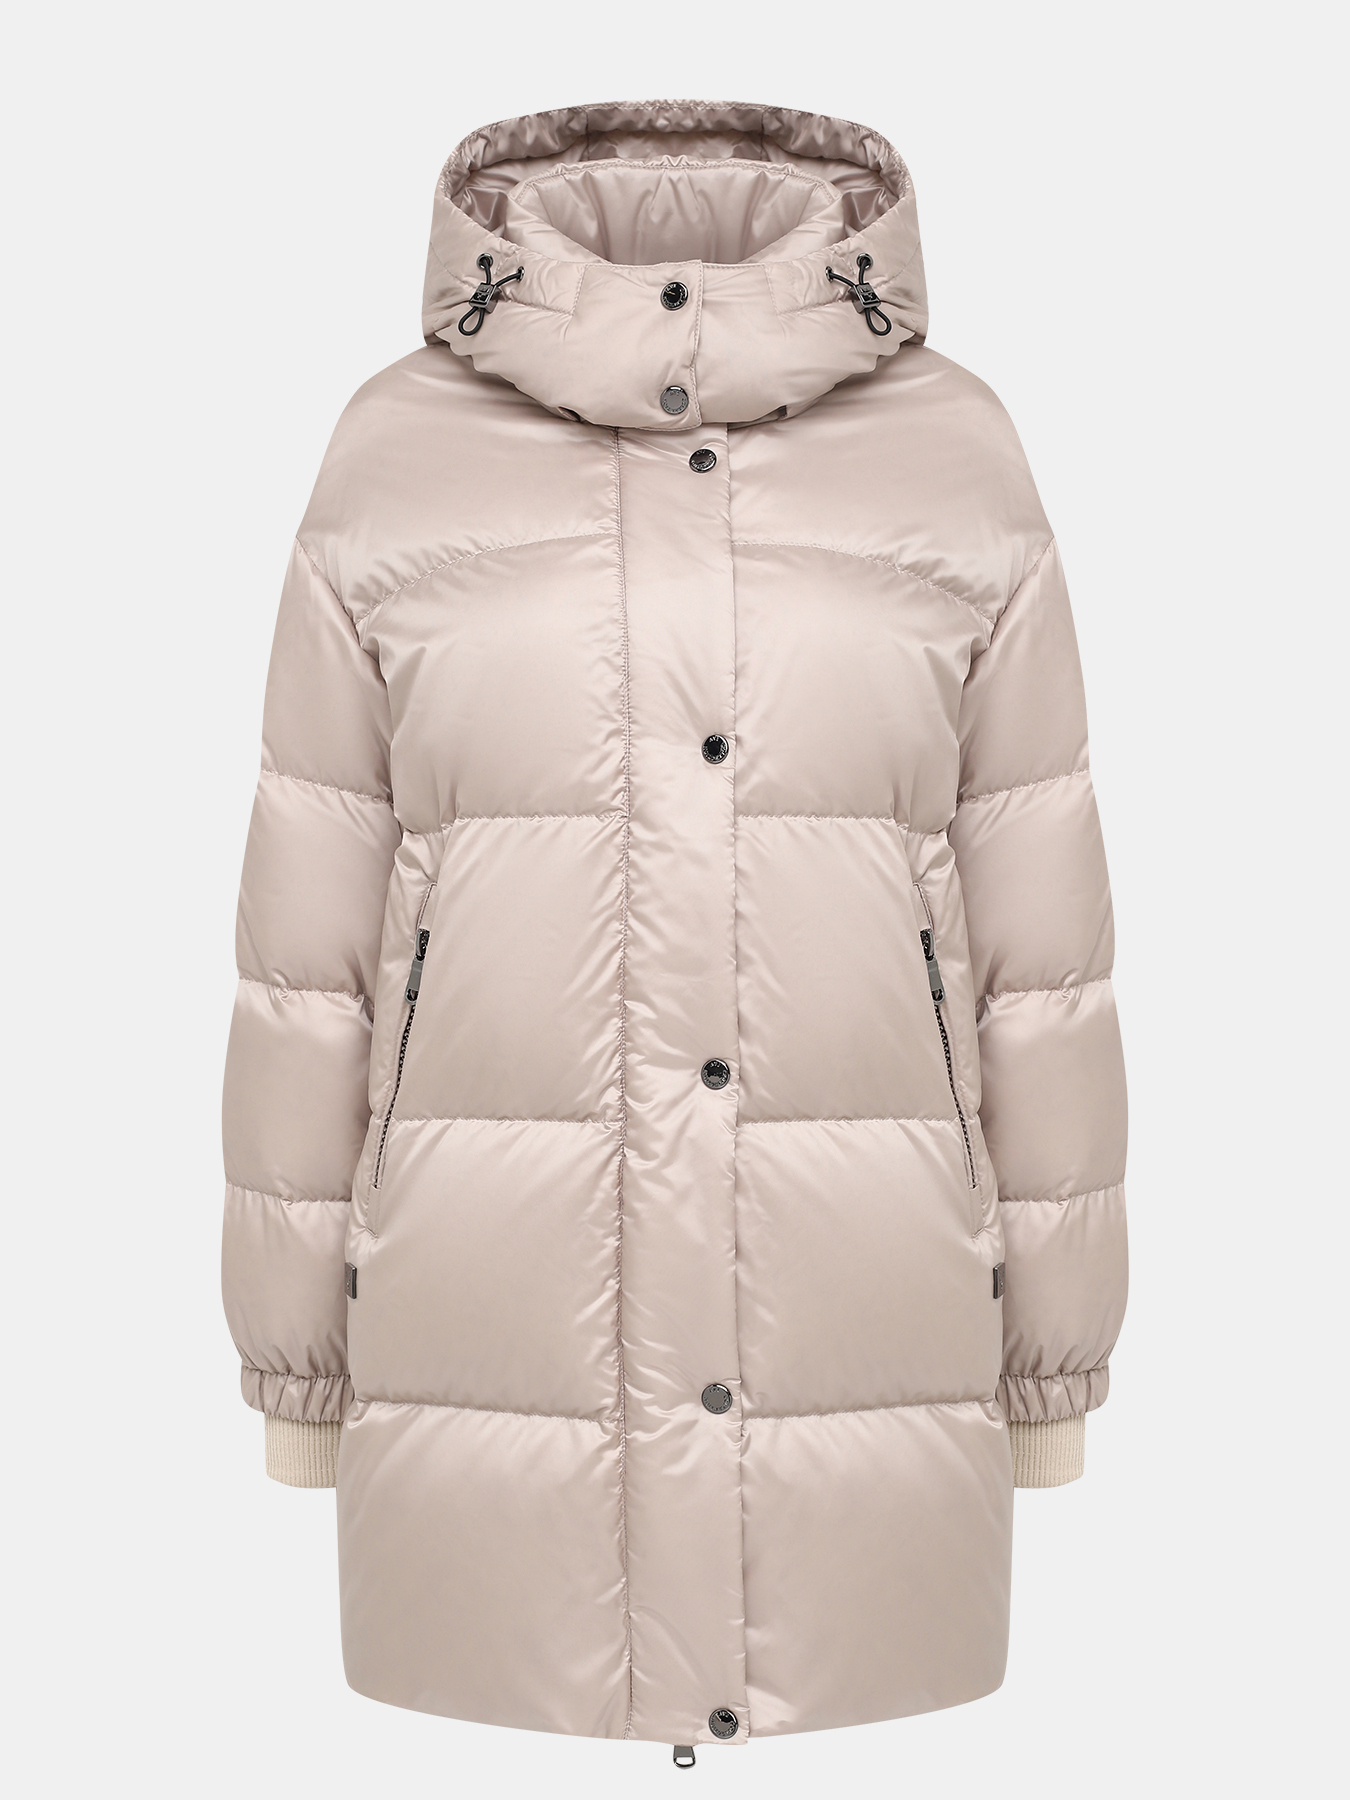 Пальто зимнее AVI 433535-021, цвет бежевый, размер 46